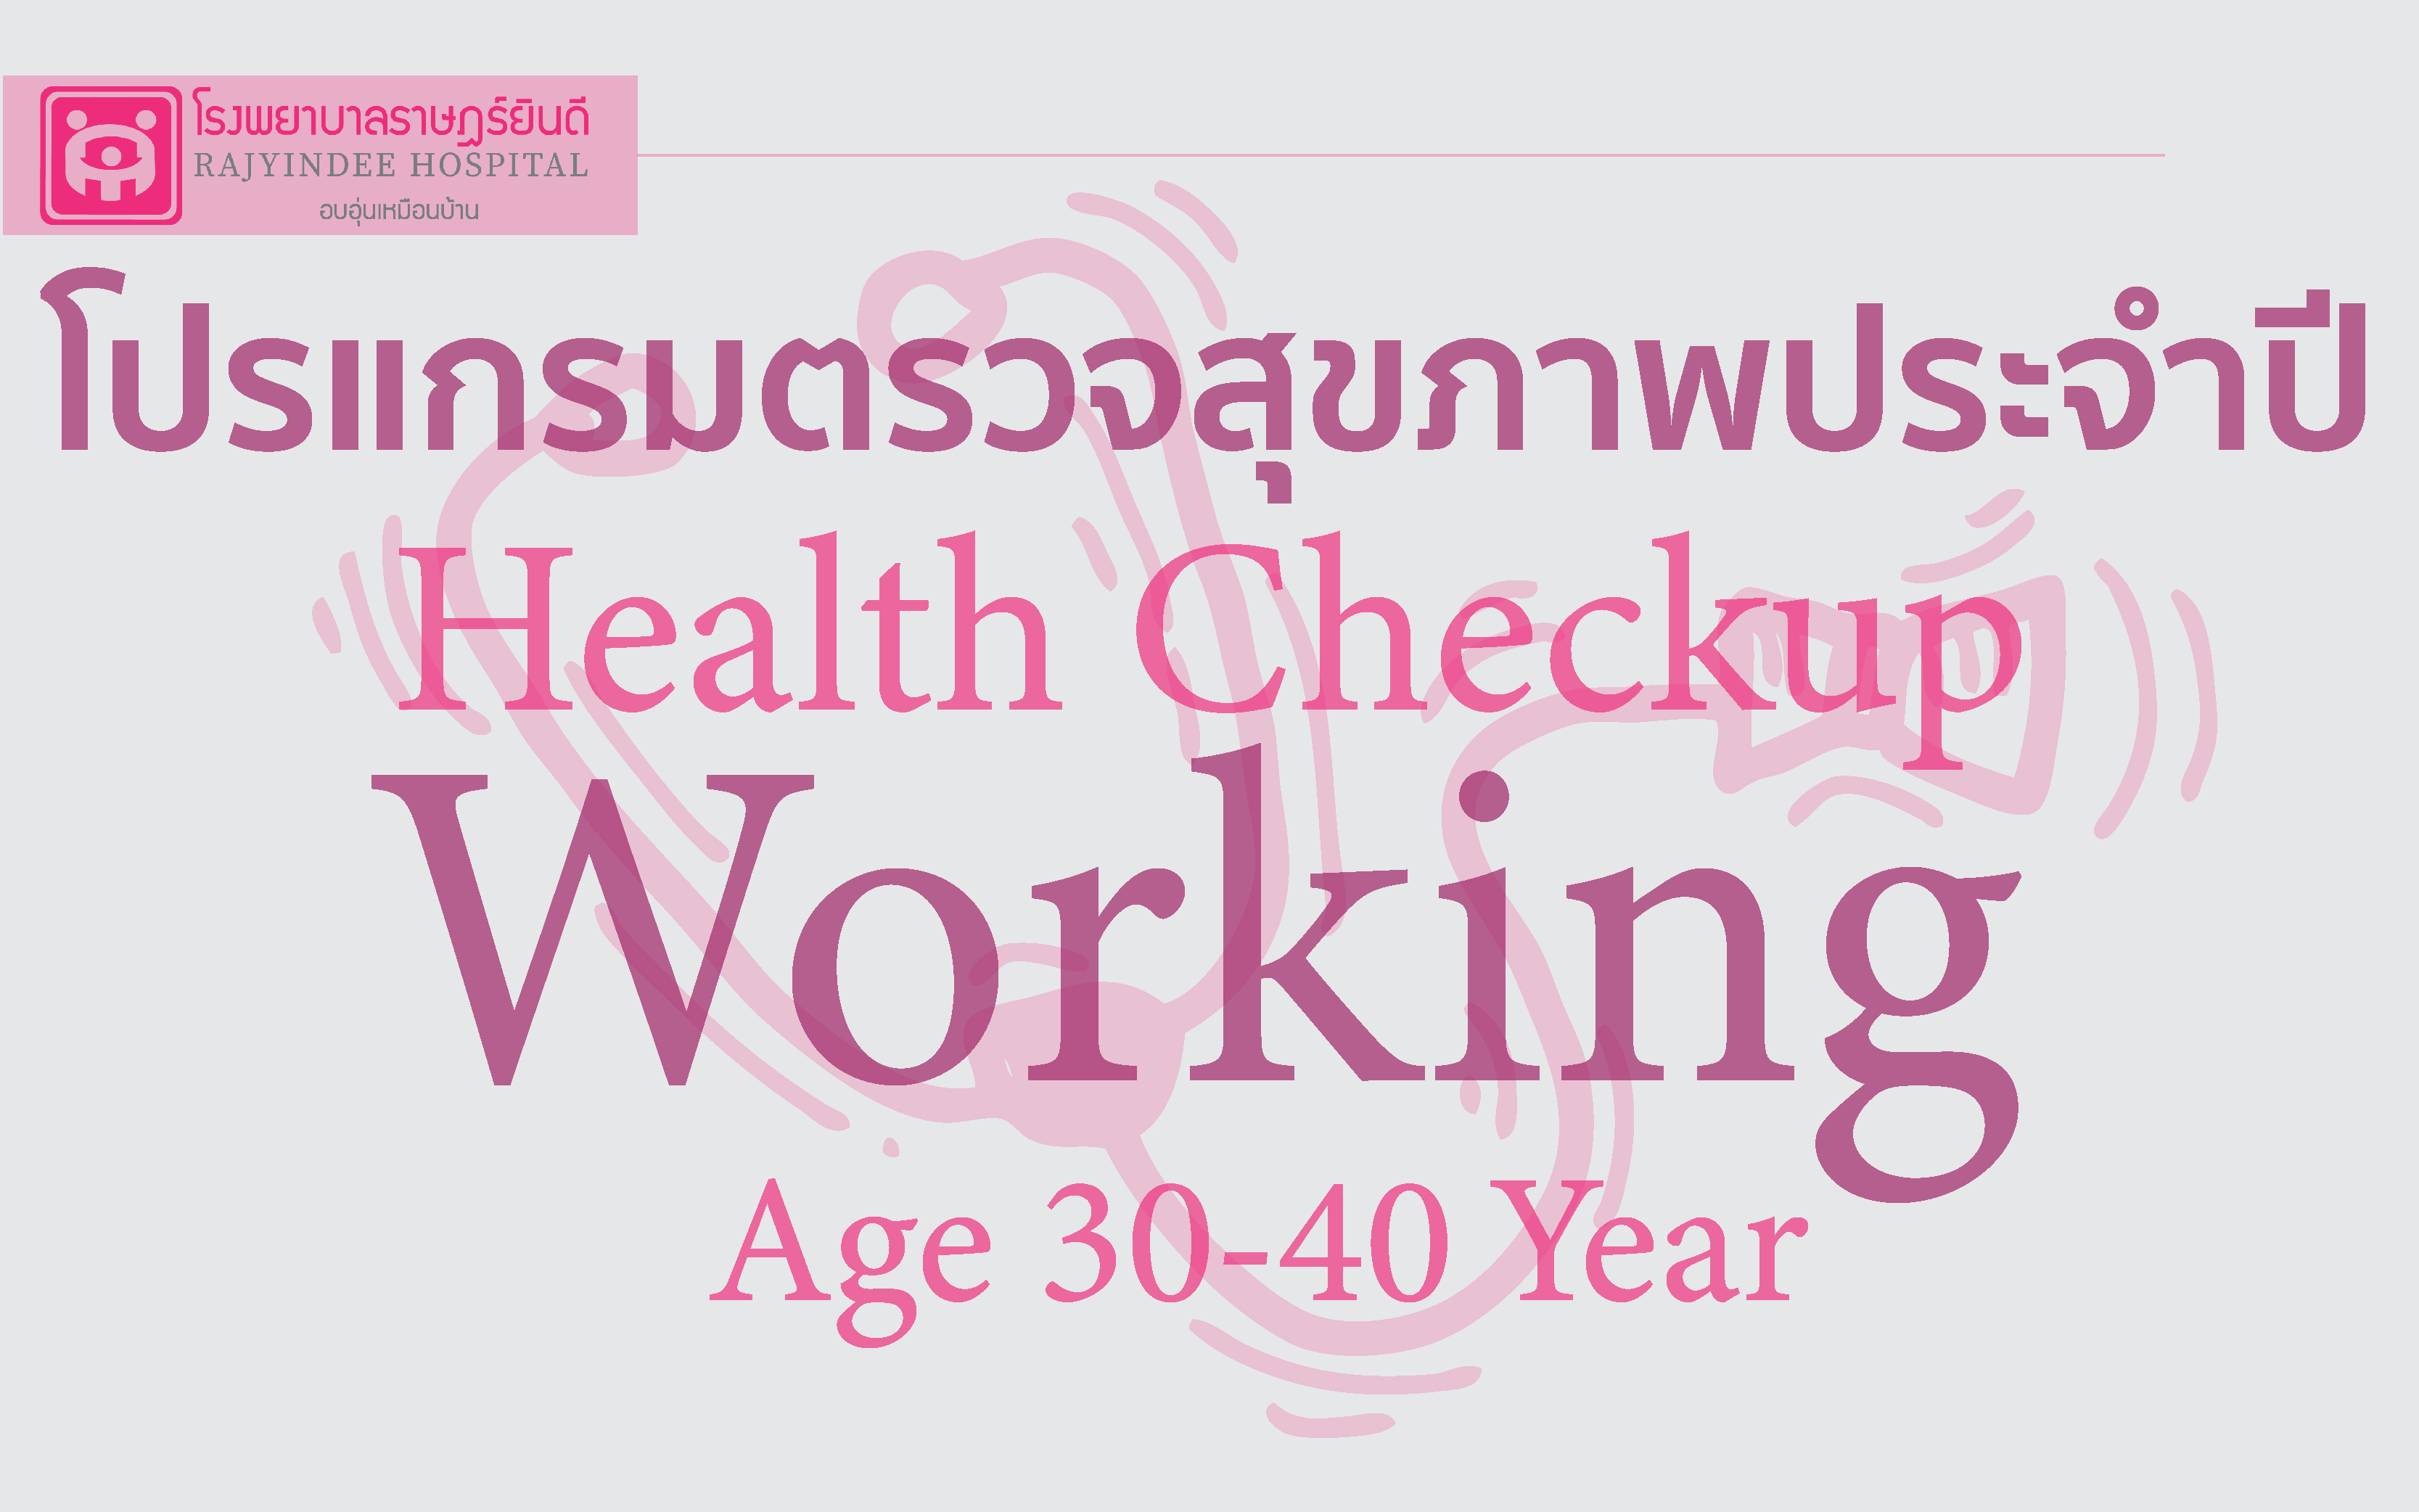 โปรแกรมตรวจสุขภาพ Working (อายุ 30-40 ปี) 